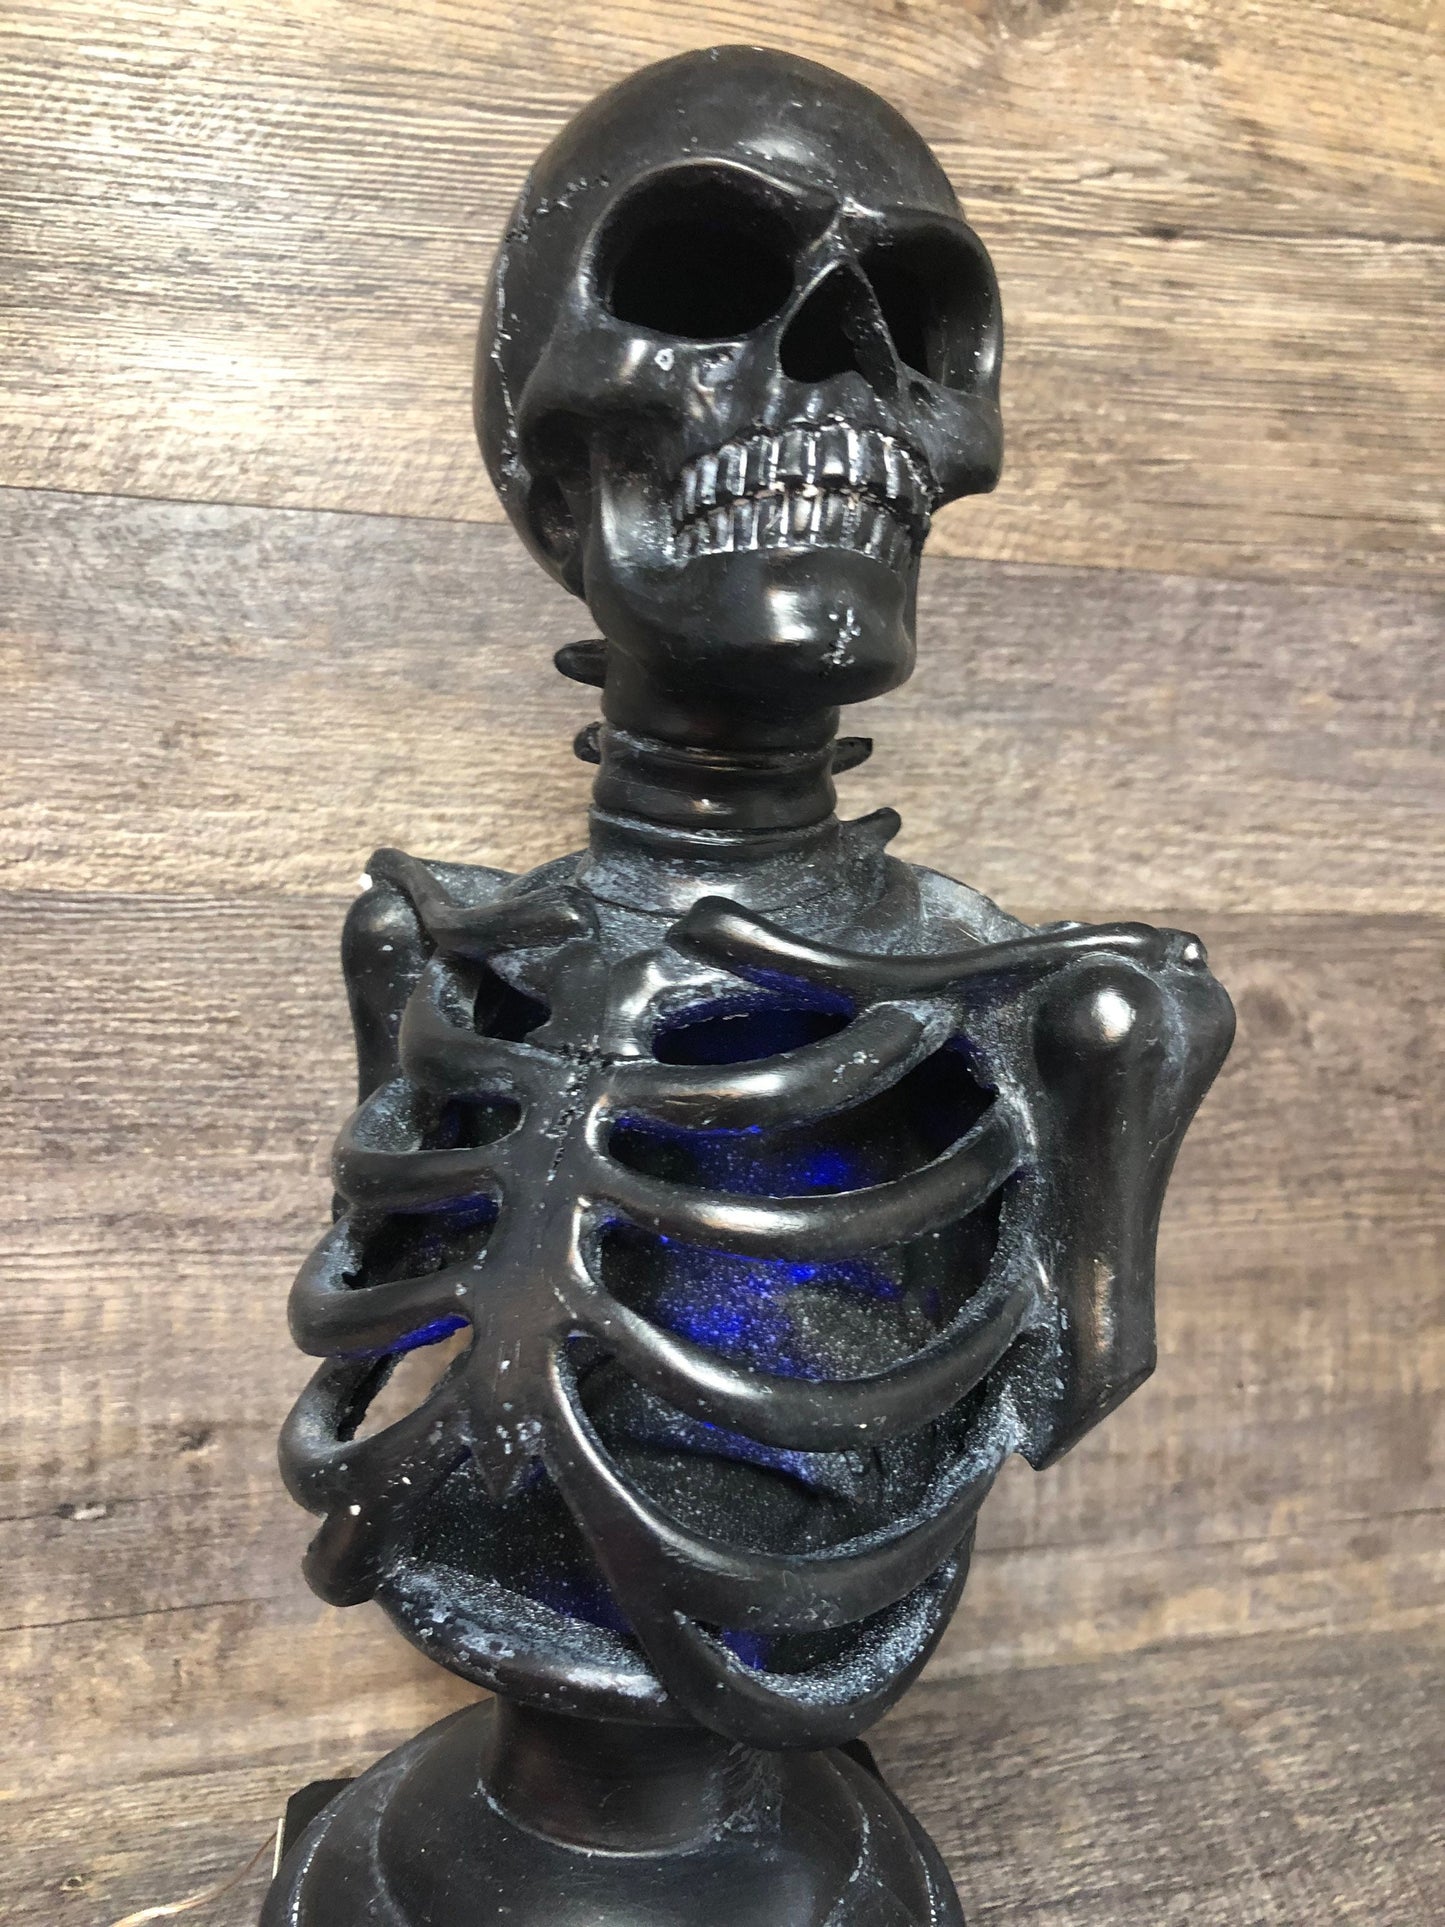 Halloween Trophy Skeleton Scariest Costume Contest LIGHTS UP Best Costume Dia De Los Muertos Skeleton Trophies Skull Vintage Halloween Decor